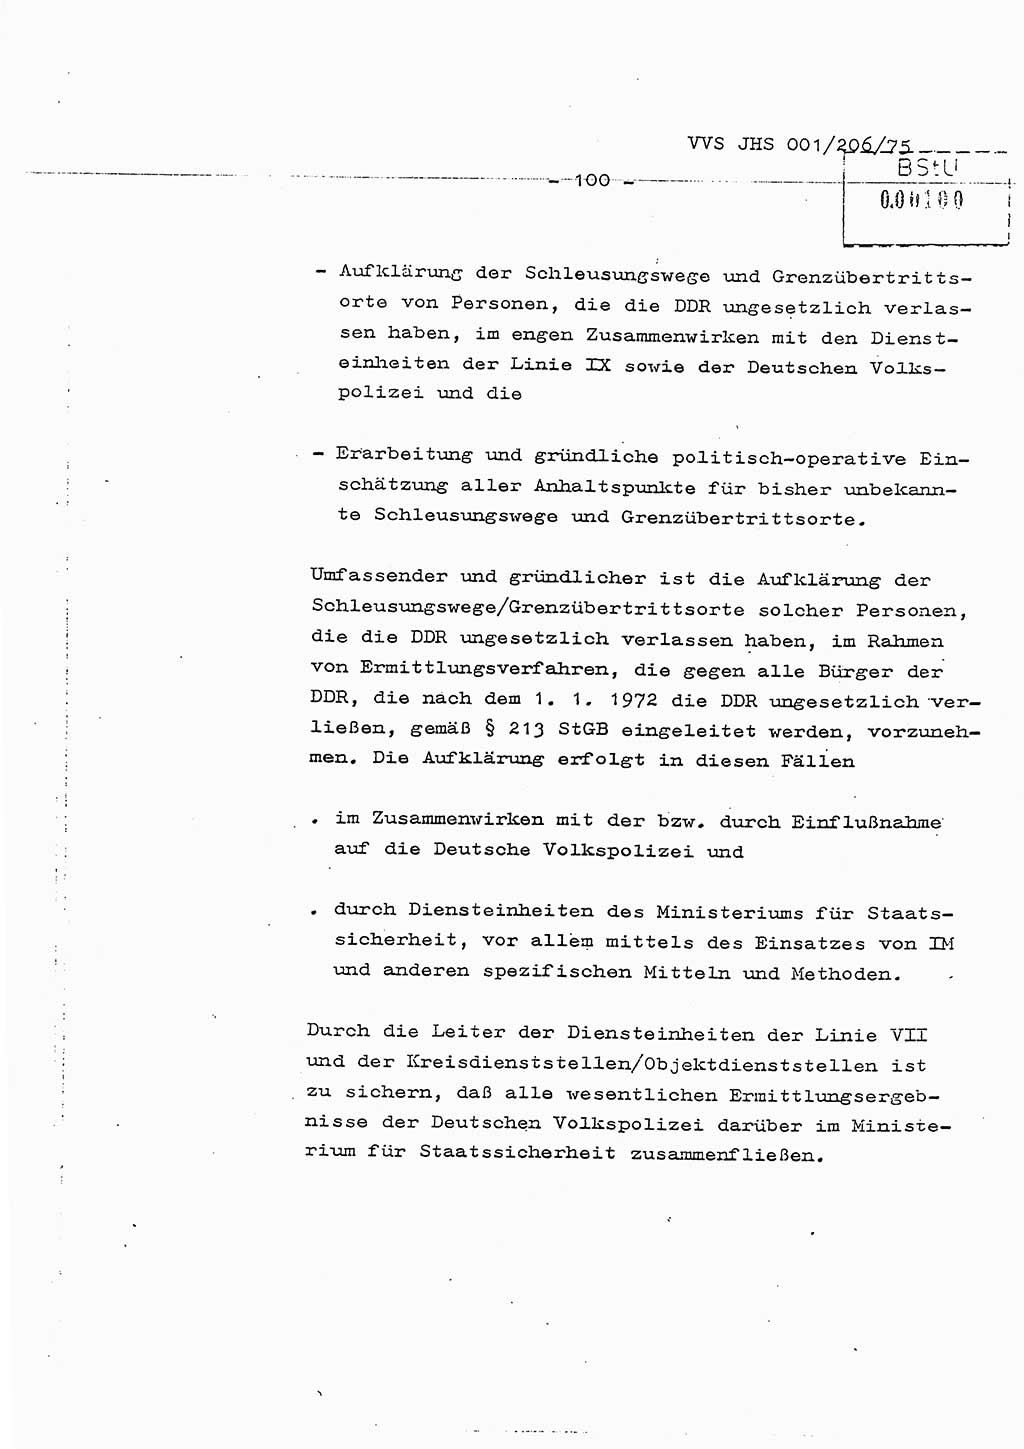 Dissertation Generalmajor Manfred Hummitzsch (Leiter der BV Leipzig), Generalmajor Heinz Fiedler (HA Ⅵ), Oberst Rolf Fister (HA Ⅸ), Ministerium für Staatssicherheit (MfS) [Deutsche Demokratische Republik (DDR)], Juristische Hochschule (JHS), Vertrauliche Verschlußsache (VVS) 001-206/75, Potsdam 1975, Seite 100 (Diss. MfS DDR JHS VVS 001-206/75 1975, S. 100)